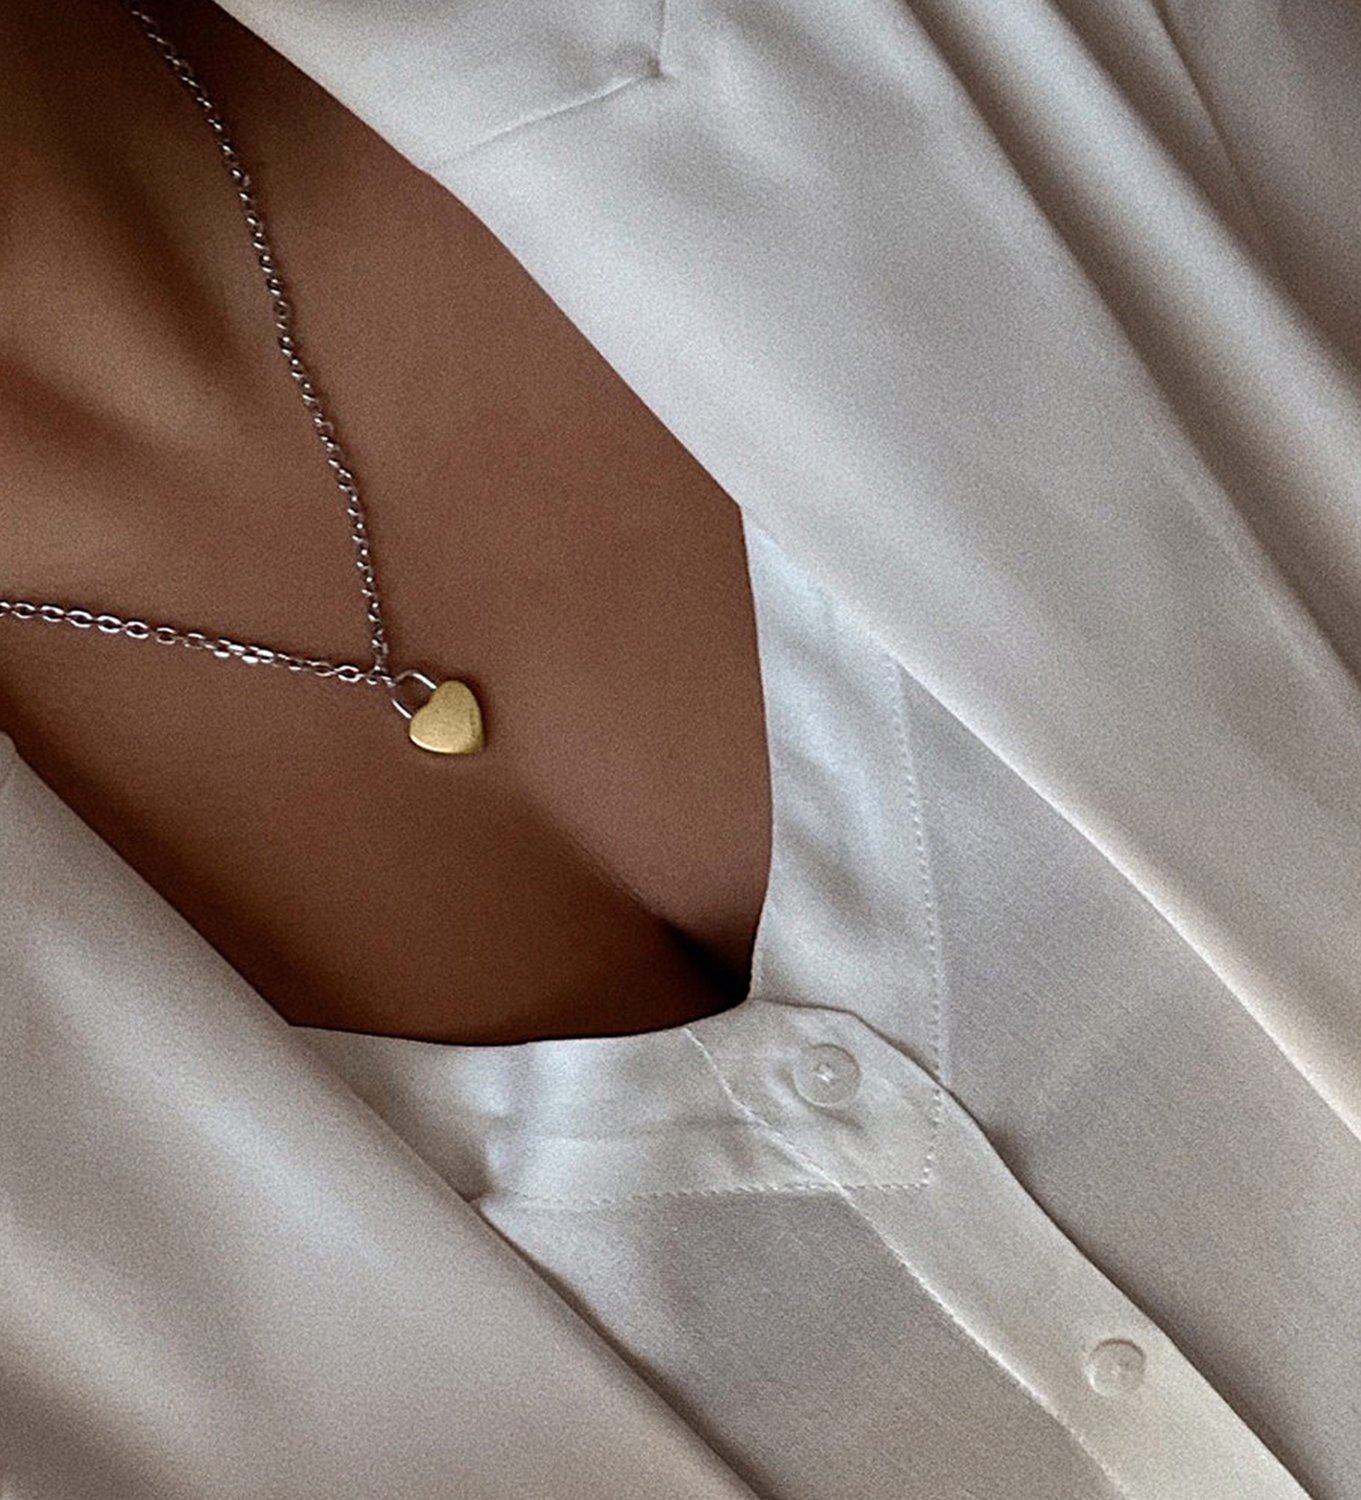 Women's MVMT heartlock necklace on model